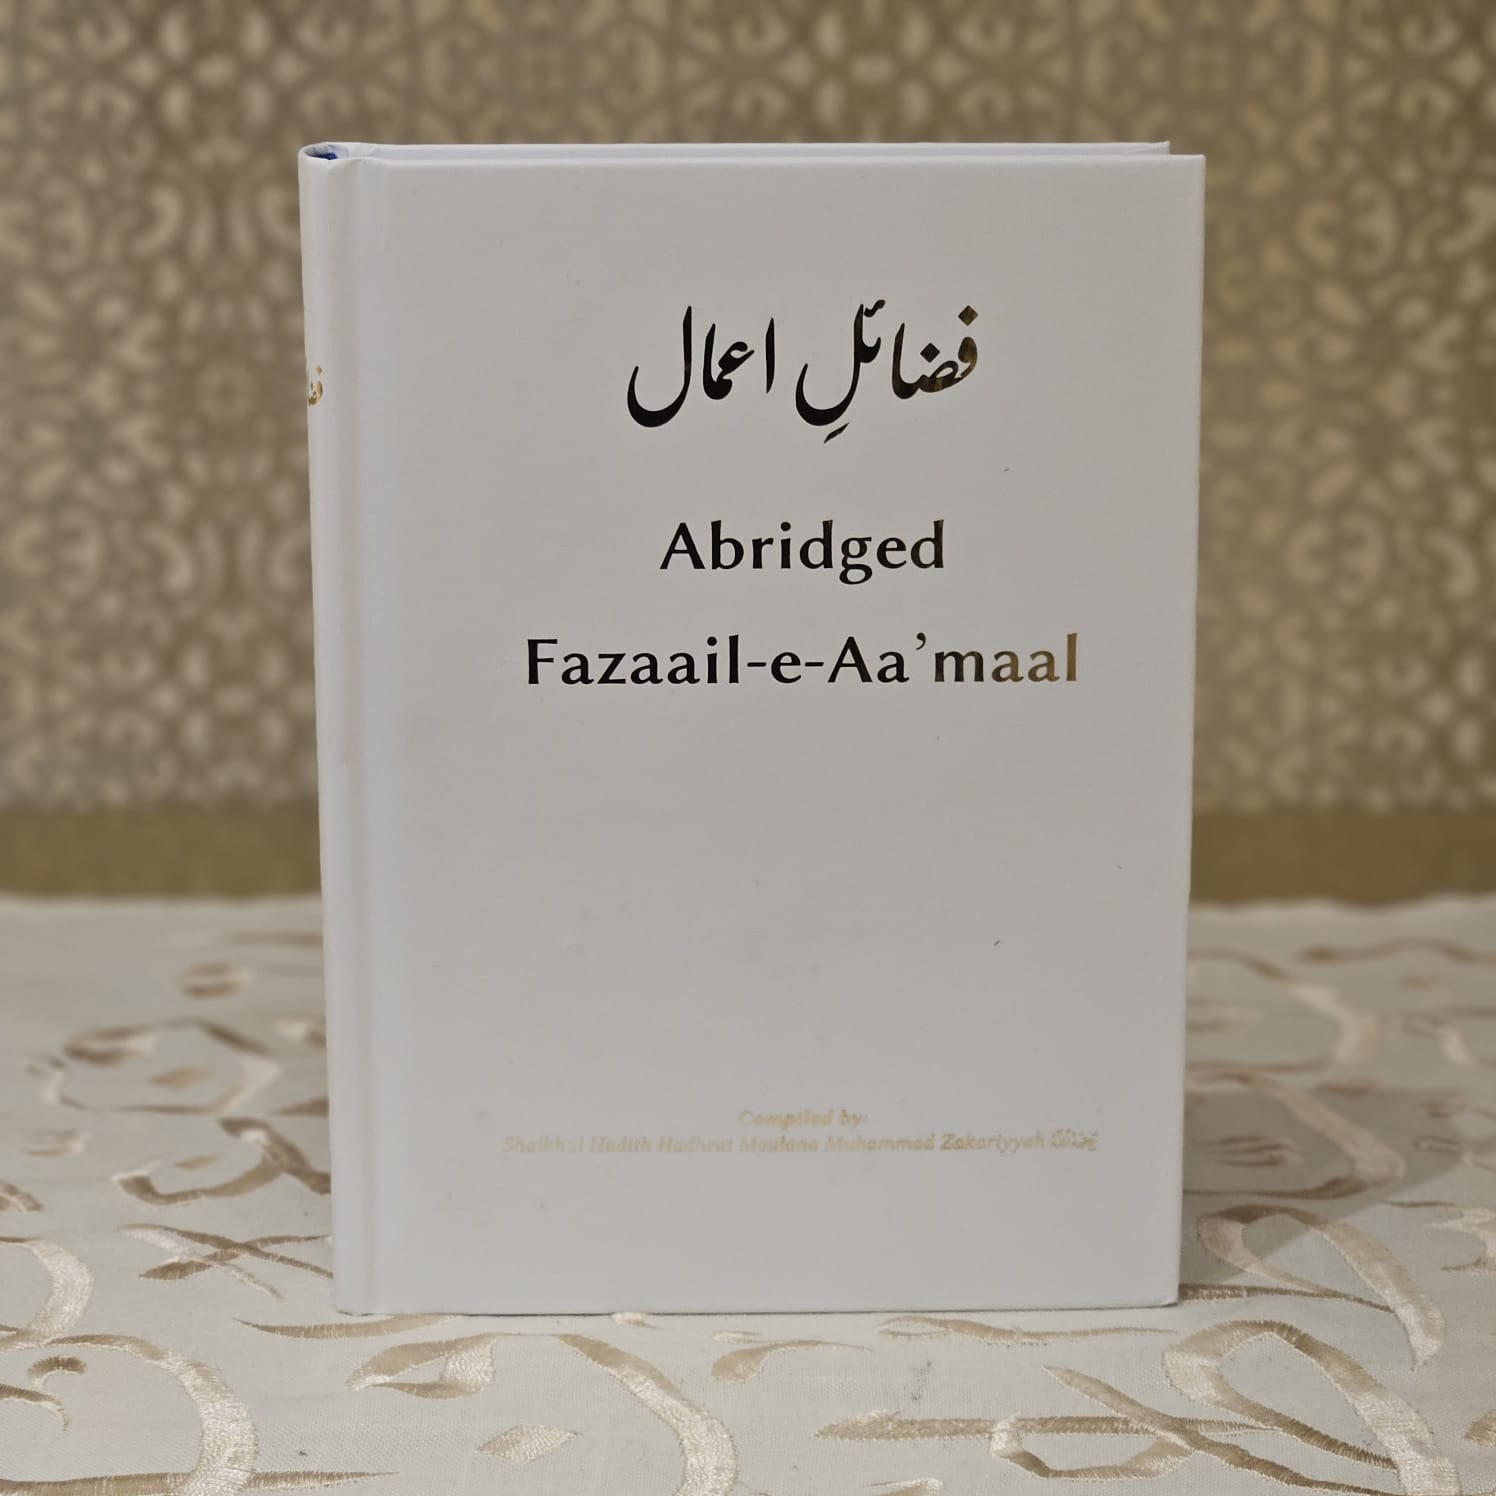 Abridged Fazaail-e-Aa'maal